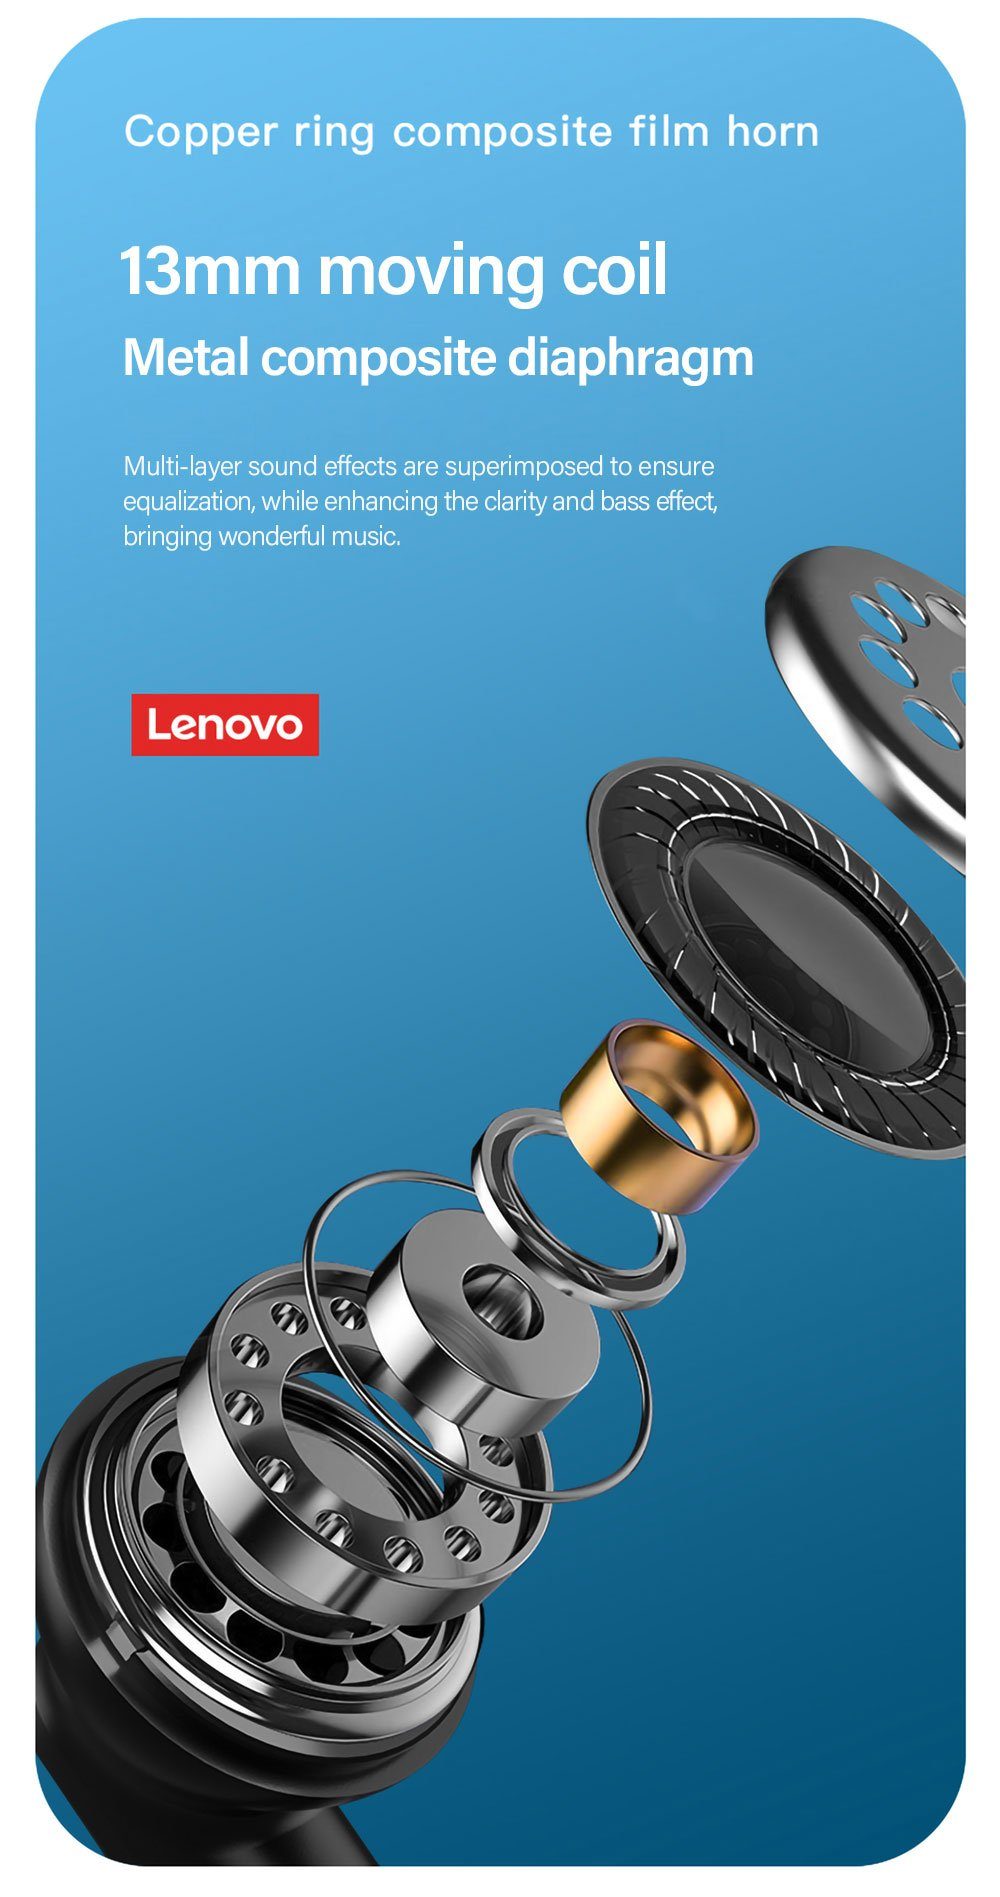 Lenovo XT96 mAh 300 Wireless, Bluetooth - Touch-Steuerung Siri, Bluetooth-Kopfhörer (True 5.1, kabellos, Stereo-Ohrhörer mit Kopfhörer-Ladehülle mit Schwarz)